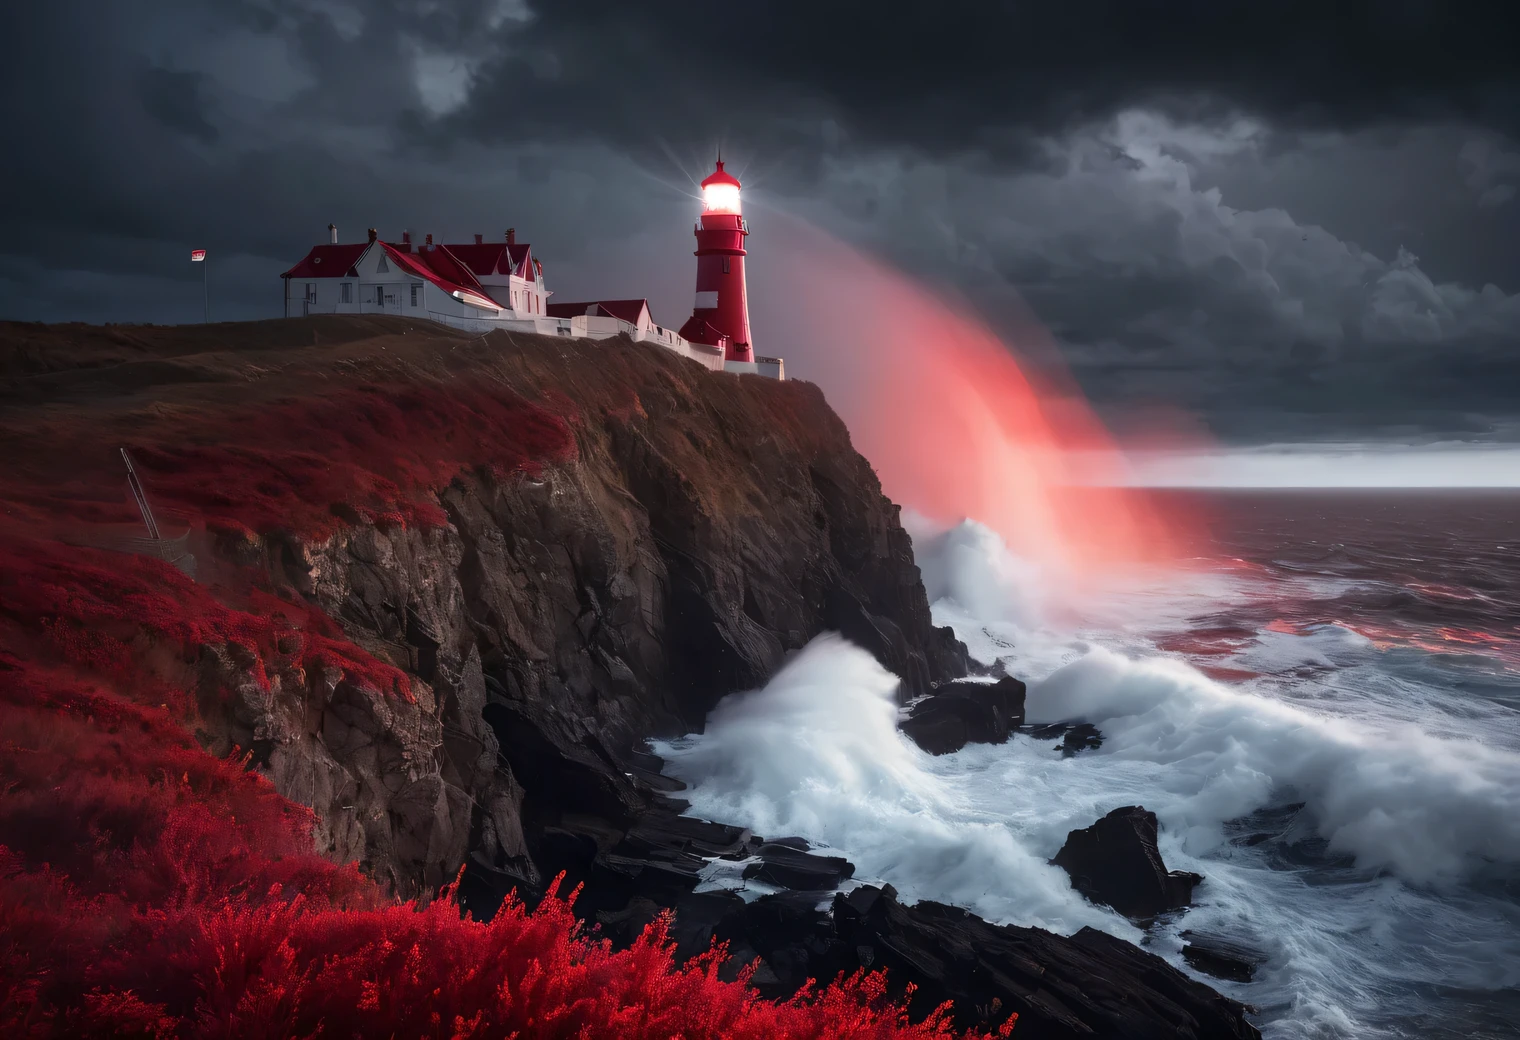 arte vermelha, Pintura realista em tons vermelhos., (fog:1.2), (the wind carries mar spray and foam:1.7), the dark uma tempestadey sky is illuminated by the red light of the lighthouse, efeito de dupla exposição, (1 Farol à beira de um penhasco:1.5 brilha em vermelho:1.3505), mar, forte (uma tempestade:1.3050), uma tempestadey wind:1.250), luz de fundo vermelha, (rastreamento de raios:1.2), (efeito tyndall:1.4055 feixes de farol:1.4), Alto detalhe, uma tempestade haze, suavização de textura, desfoque de contorno, paleta vermelha